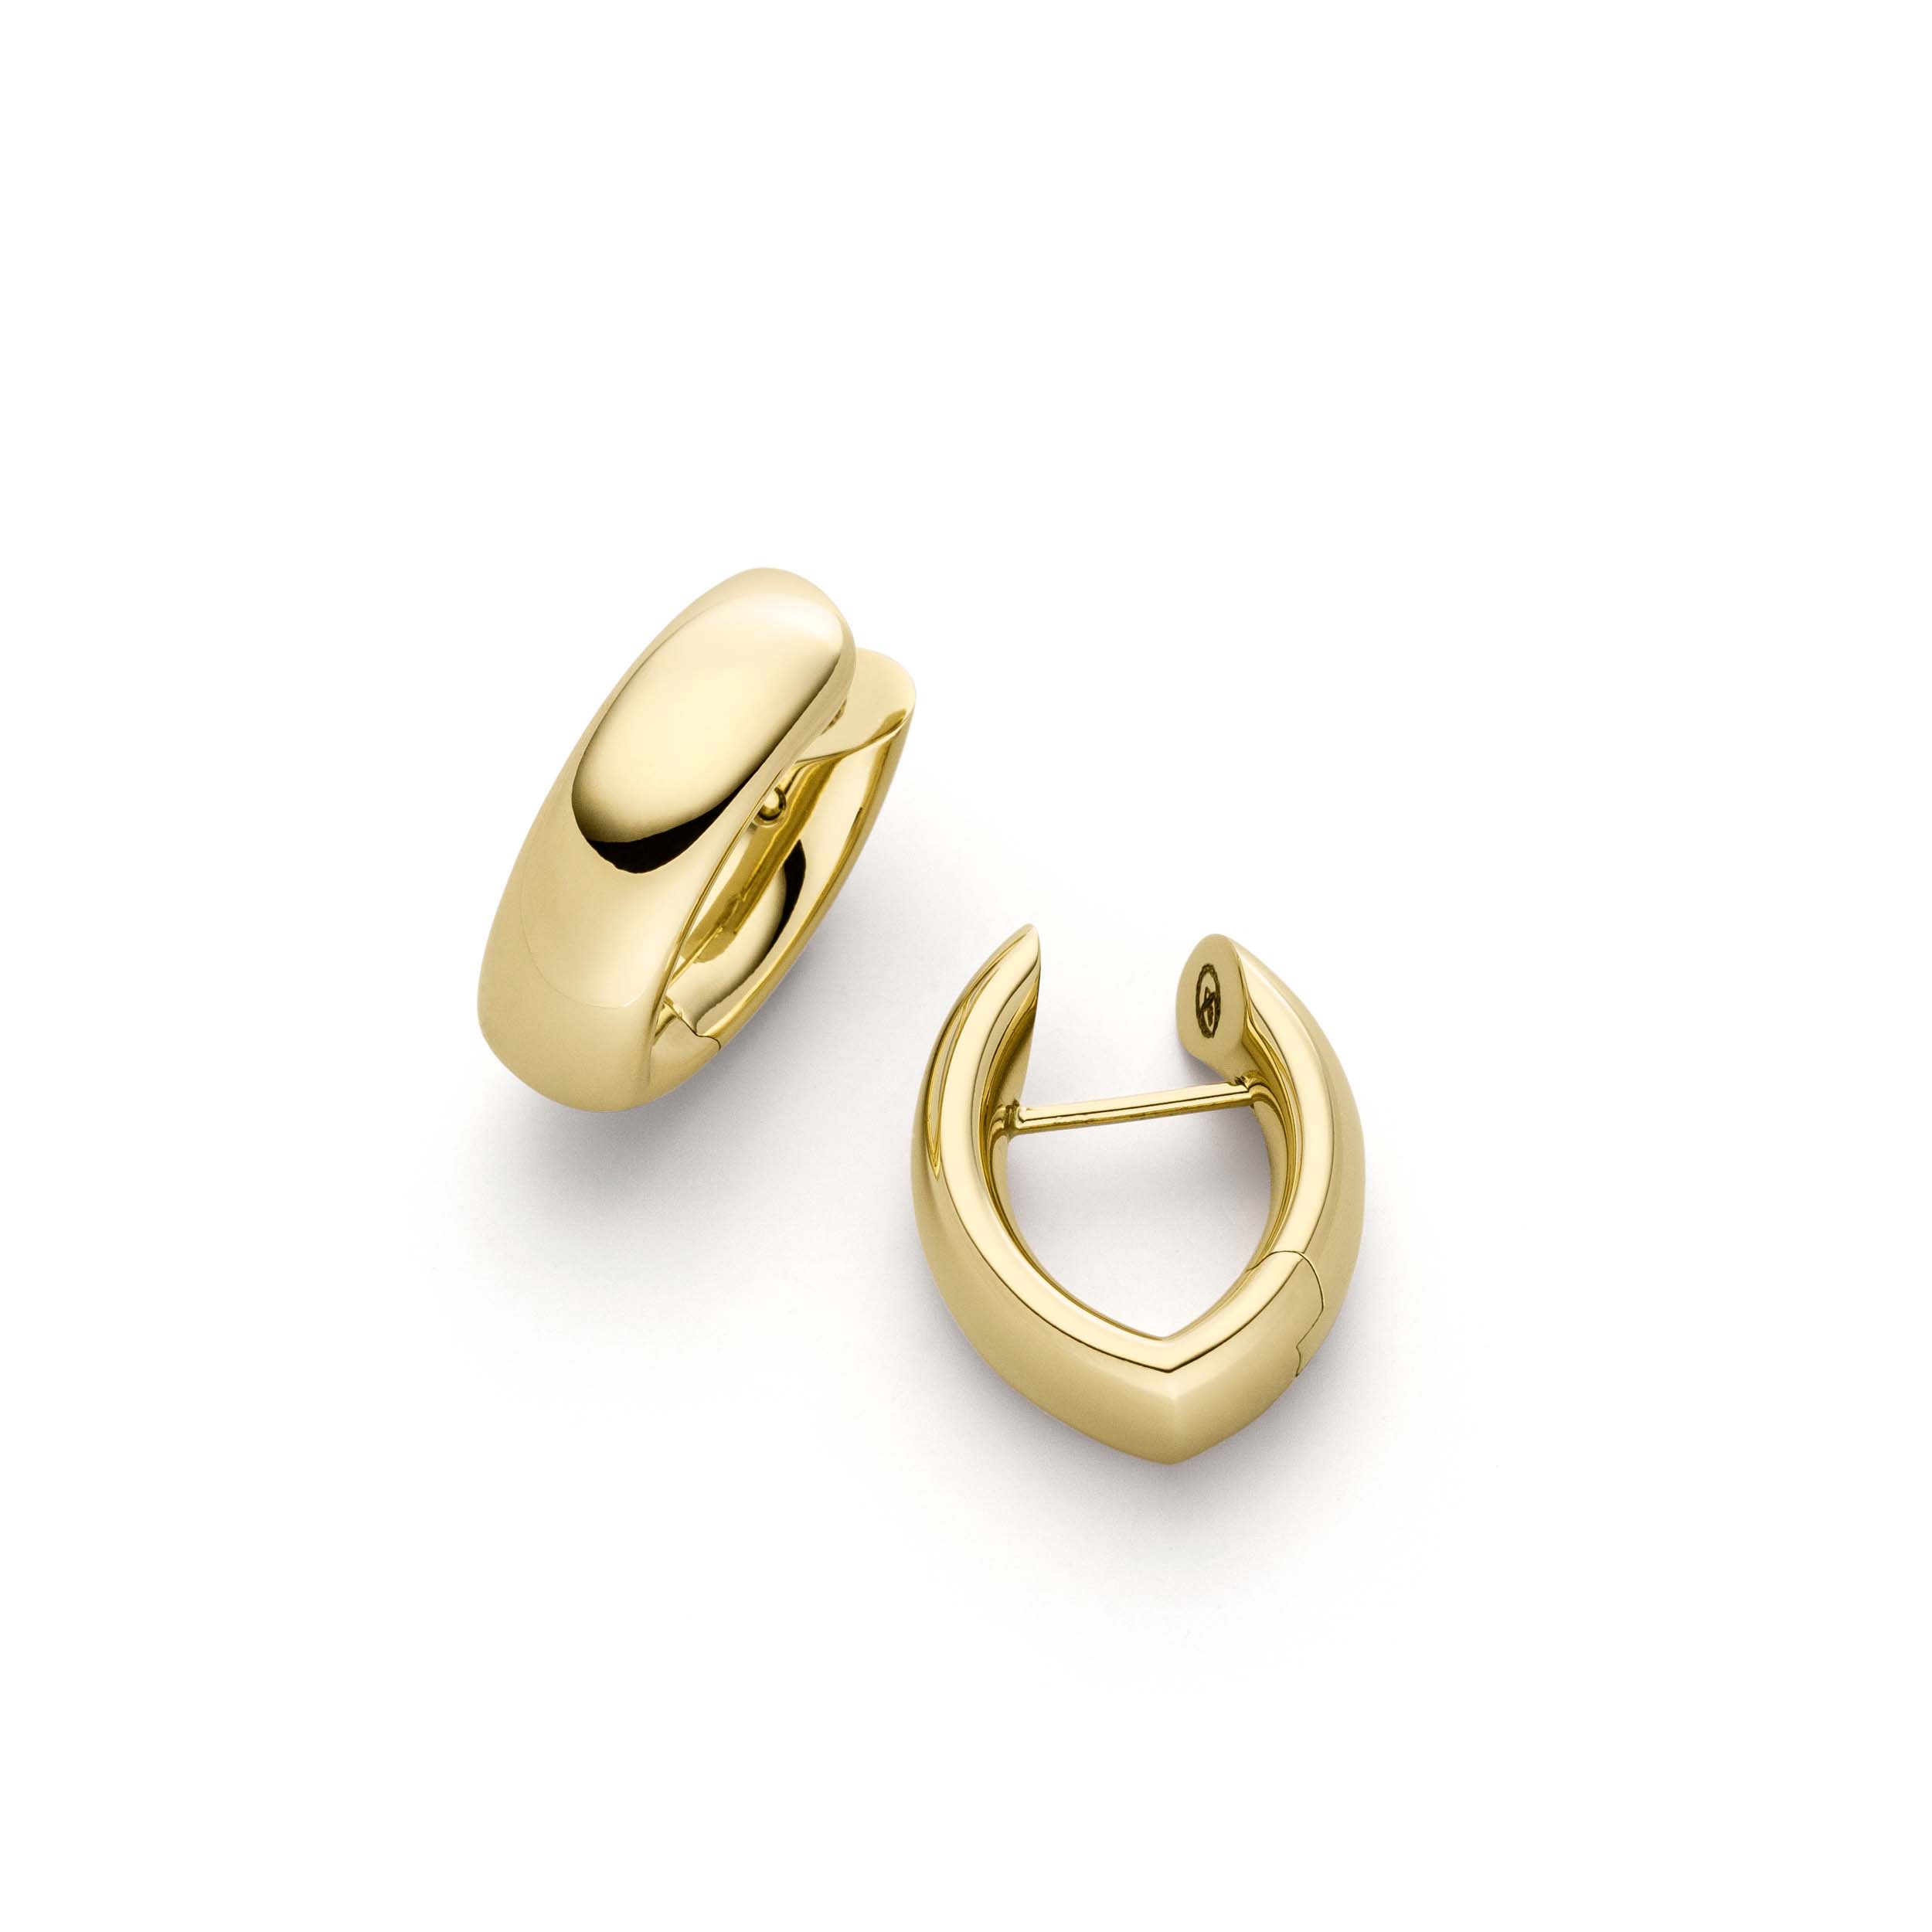 Brugerdefinerede øreringe i gult guld får personlige designersmykker